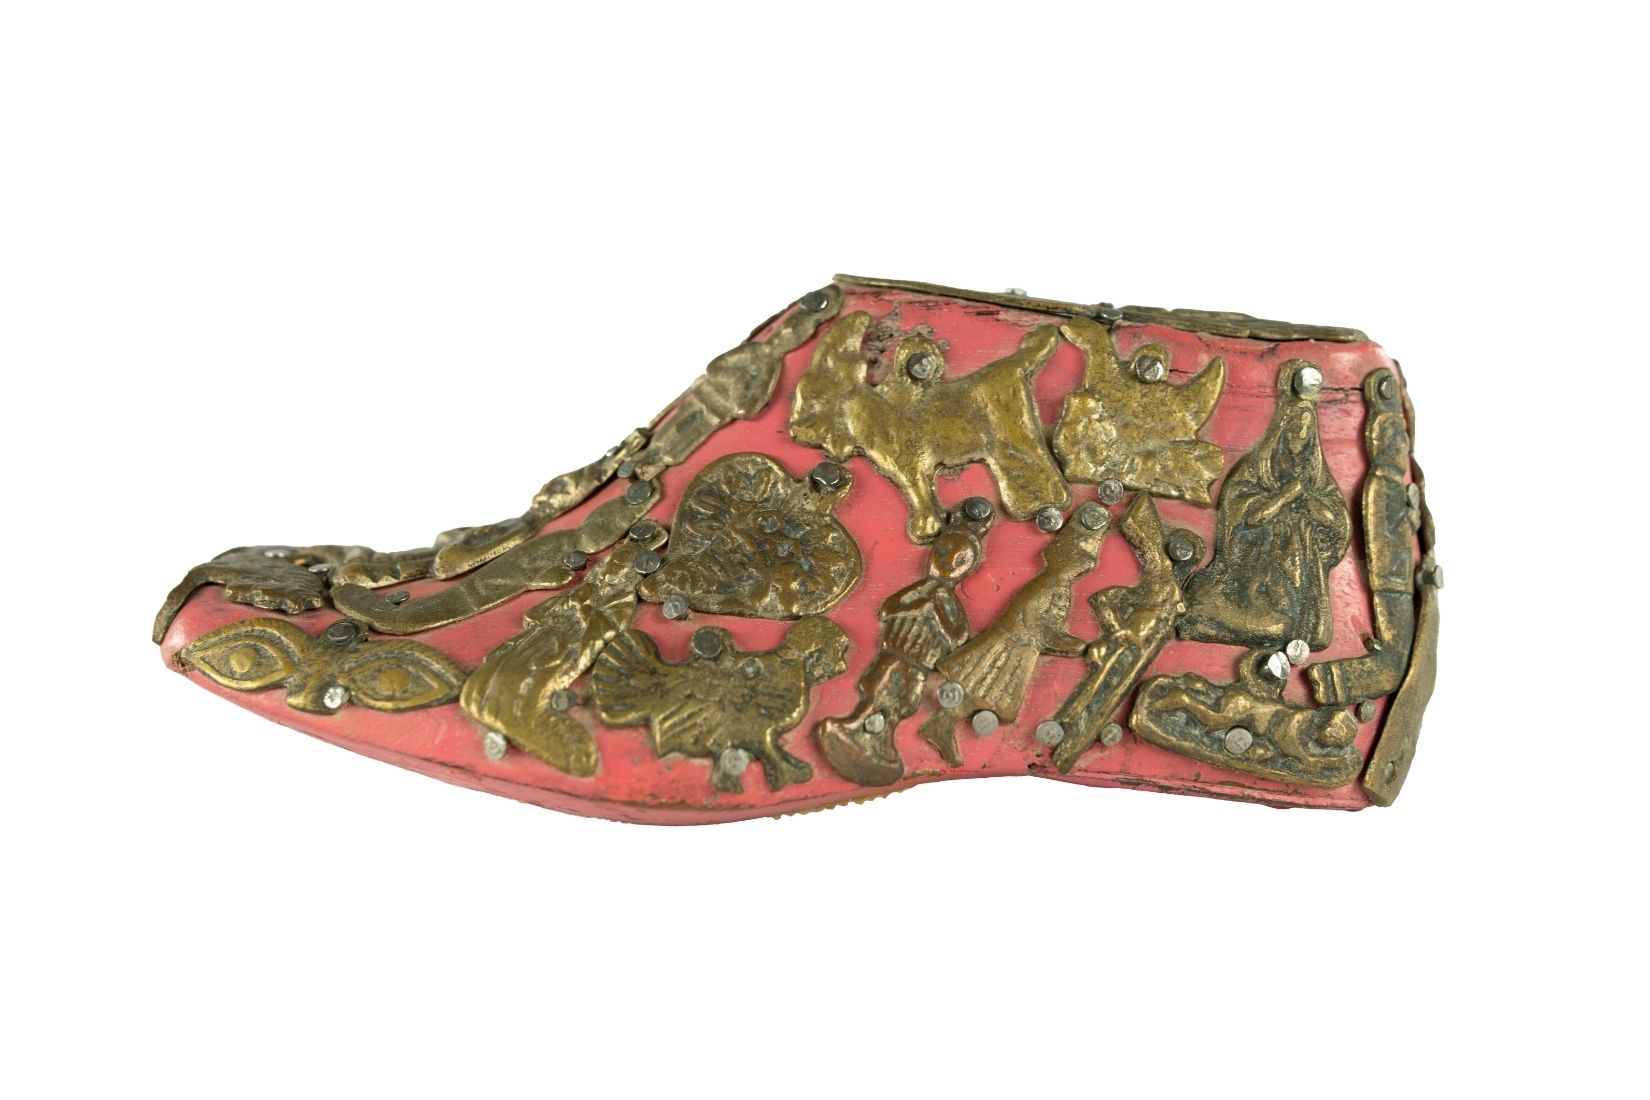 Horma de zapato tallada en madera con aplicaciones de metal. Artesano y procedencia desconocidos. Col. Yoje Tapuach. (Foto: EKV).